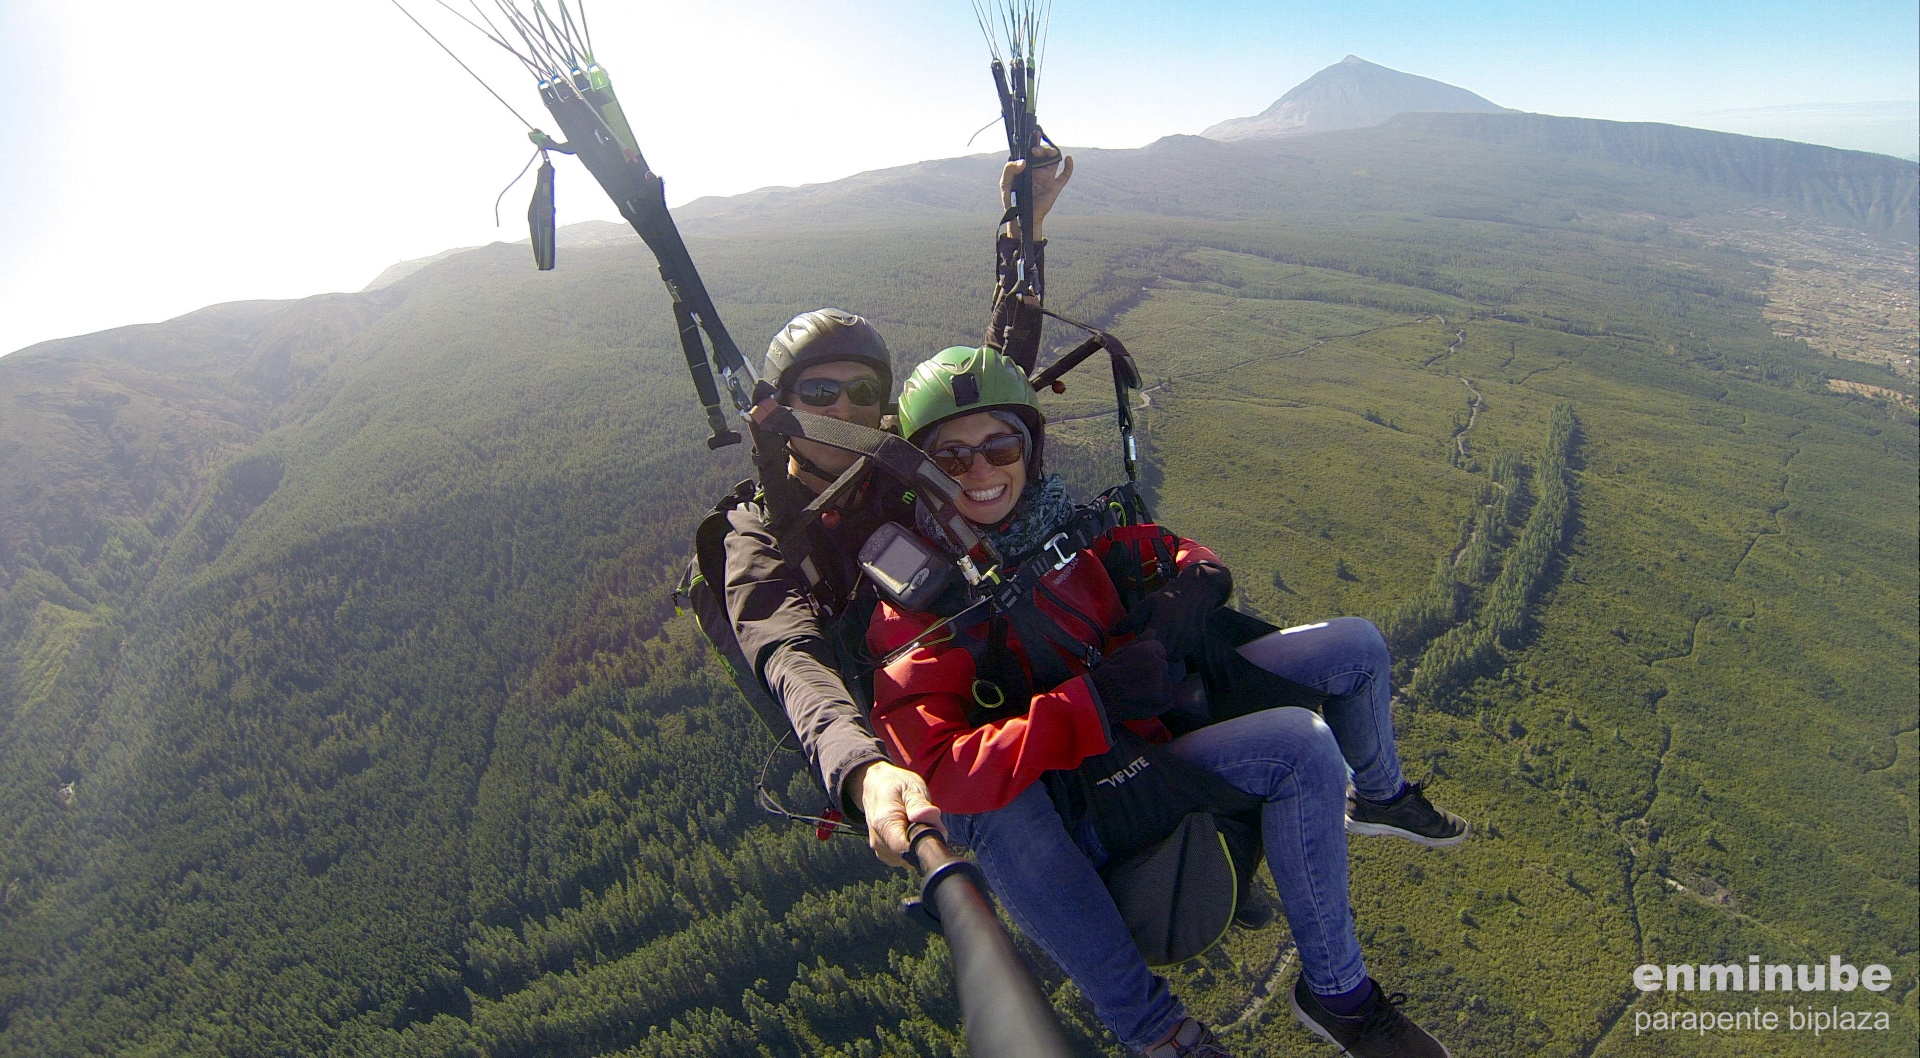 Paragliding auf Teneriffa ist ein ganz besonderes Erlebnis